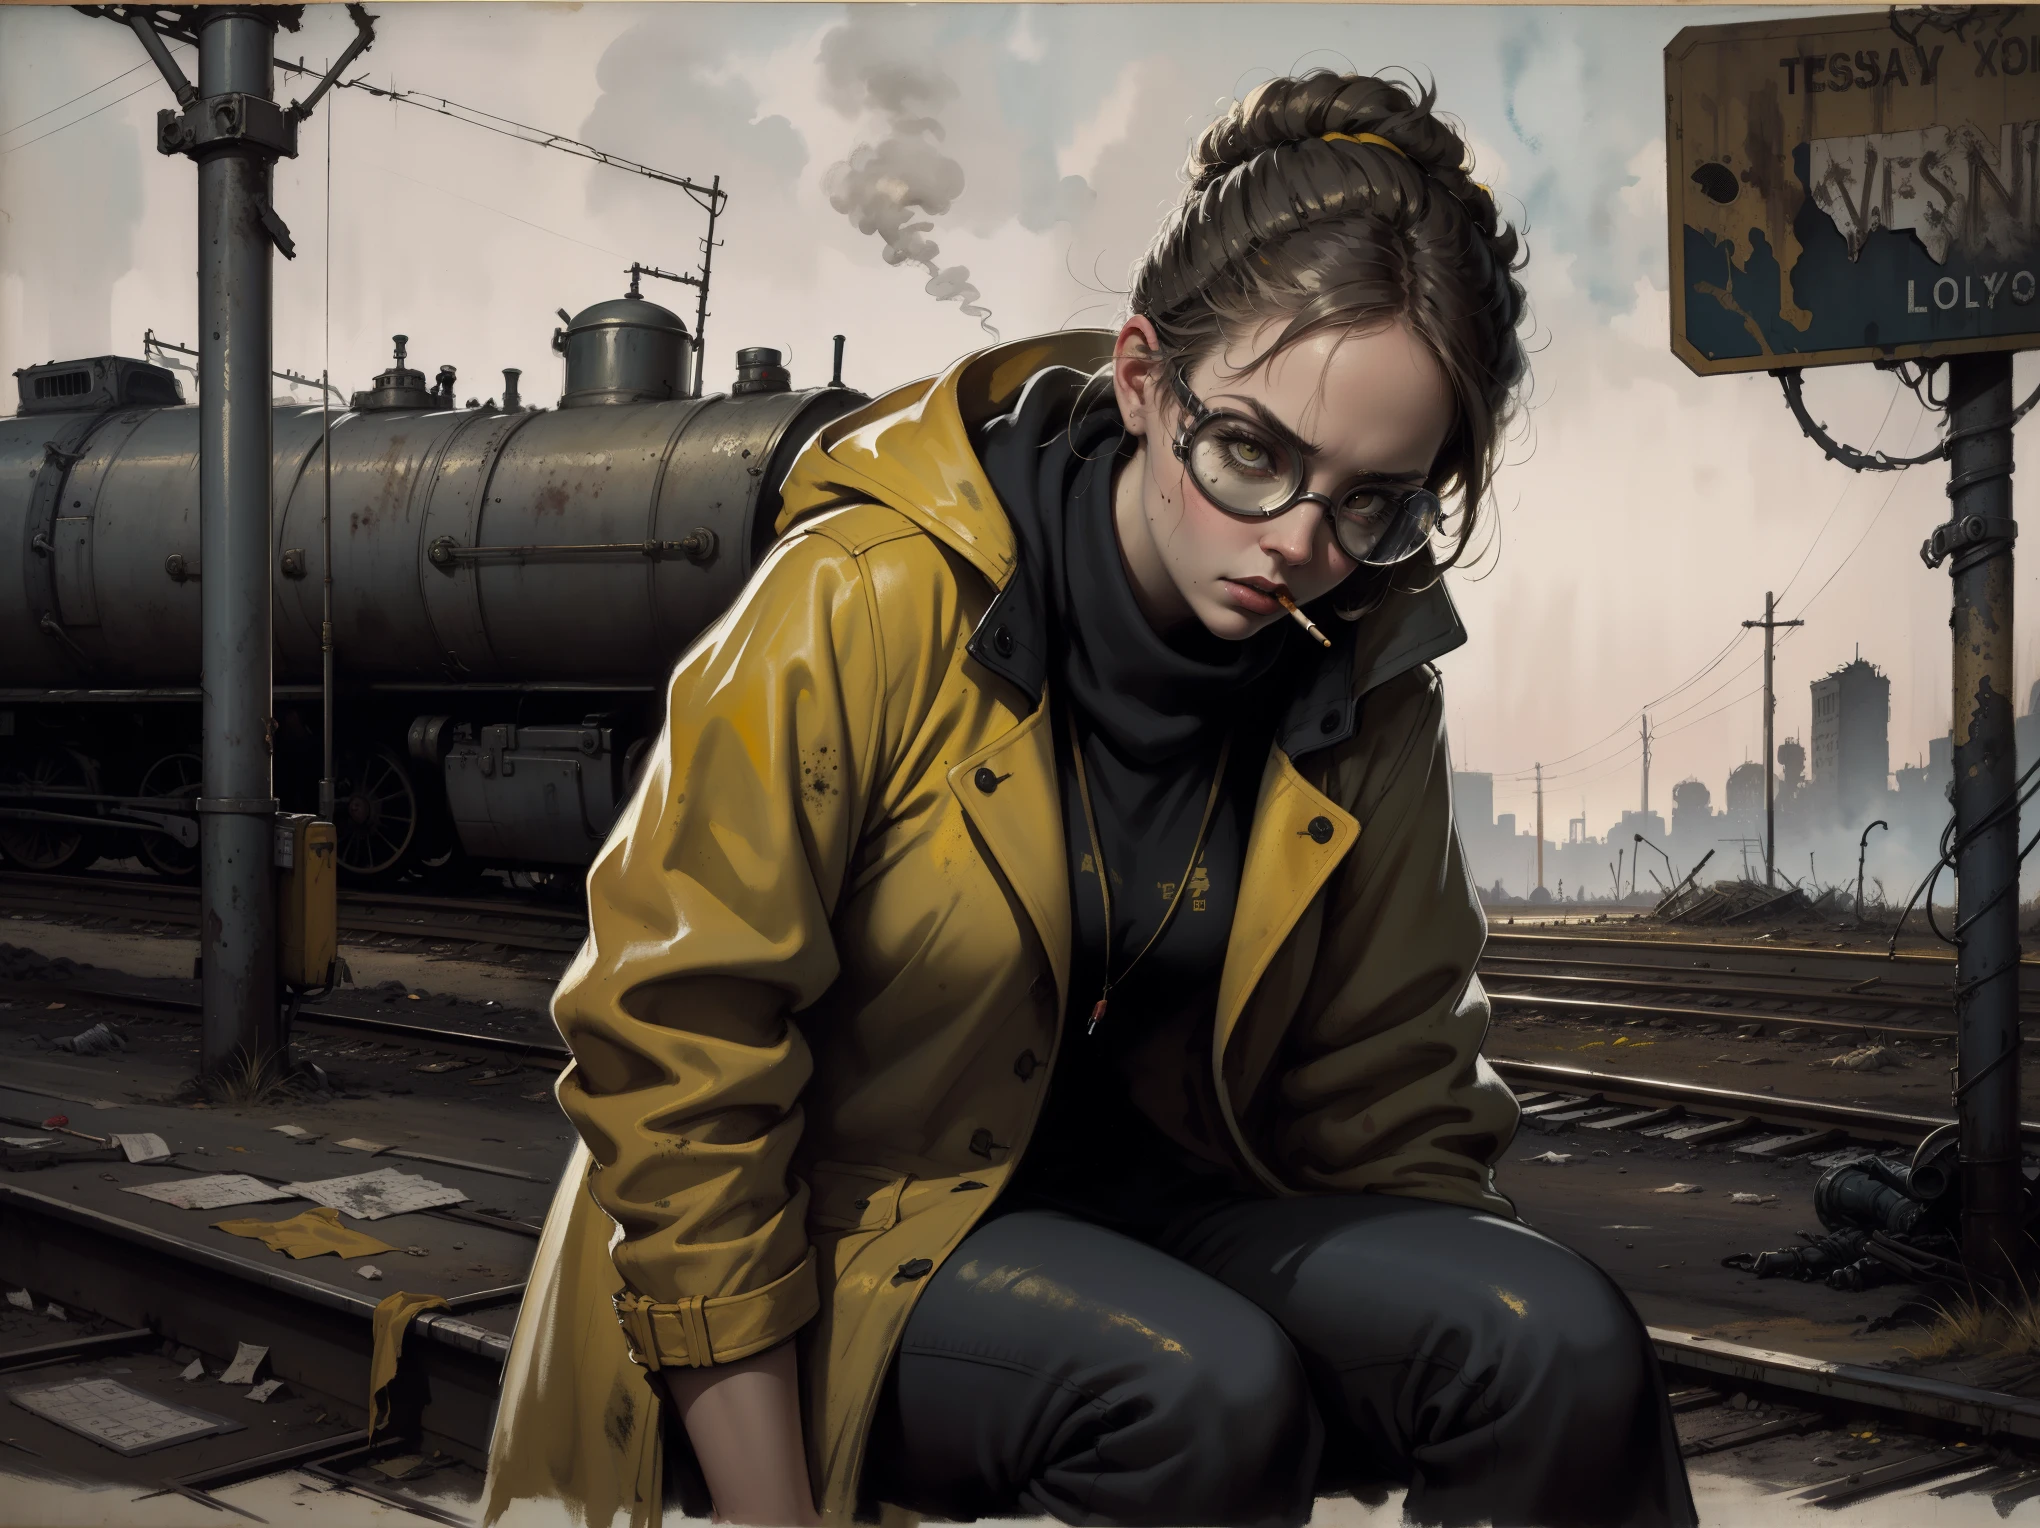 傑作, 最好的品質, 1個女孩, (特寫), 工程師, 苗條的, (黄色外套, 风镜), 坐著, (抽煙), 嚴肅的, 脏脸, 荒地, 廢棄的火車站, 工業廢墟, 灰色的, 荒涼, 黑暗的, 水彩, 草圖